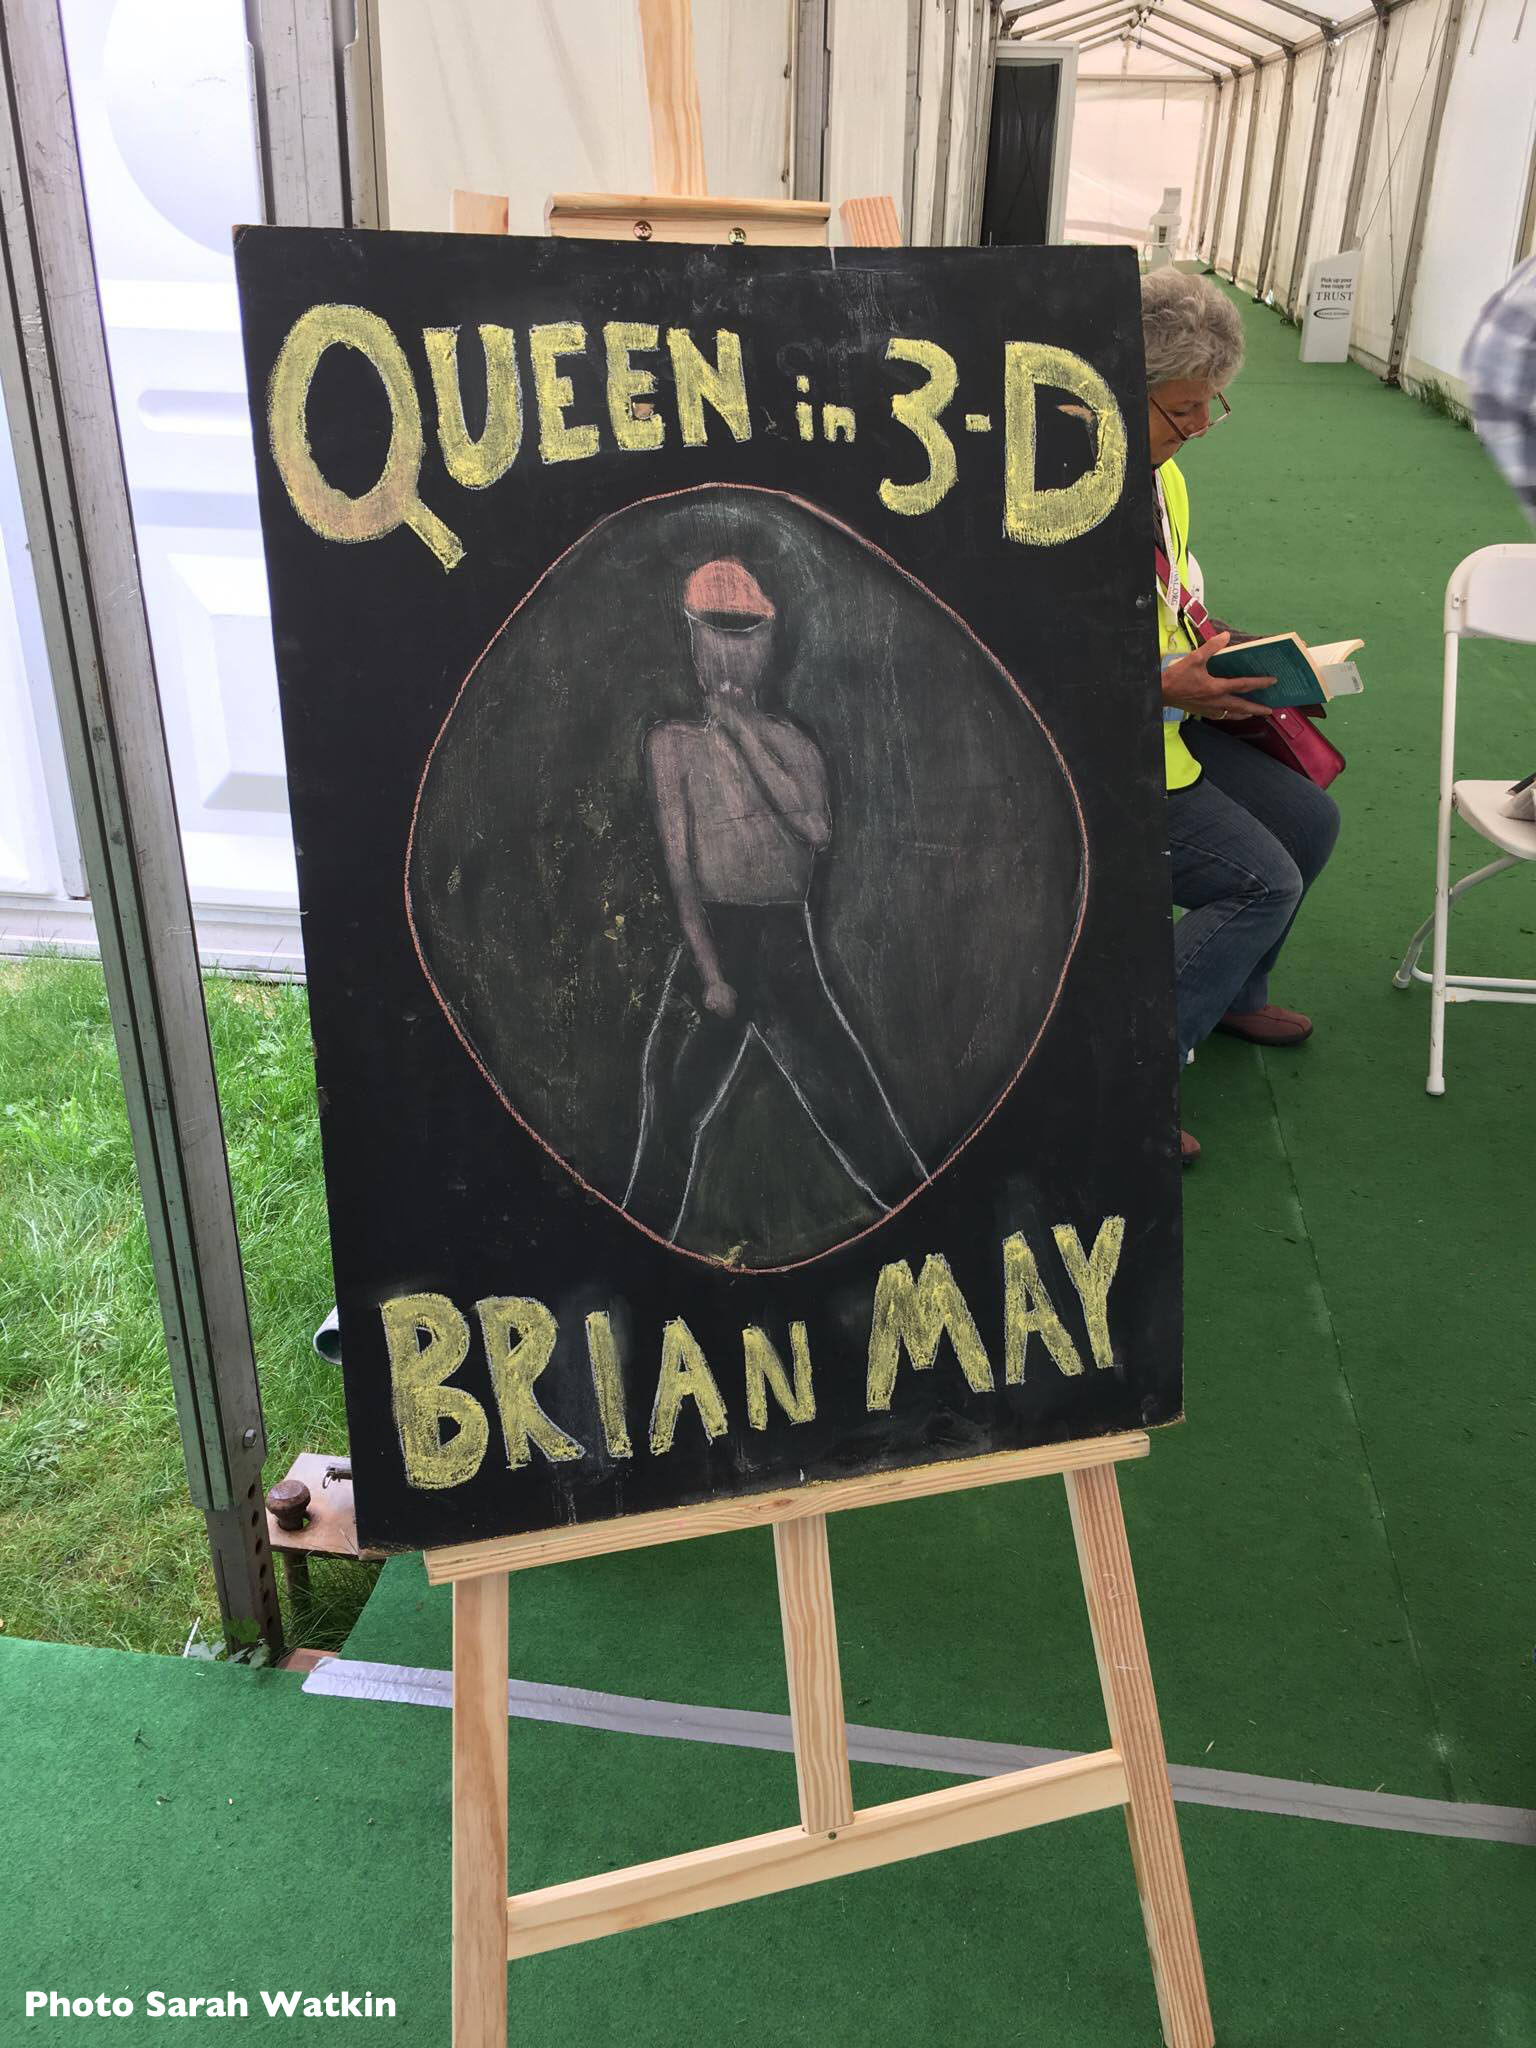 Queen In 3-D chalkboard sign